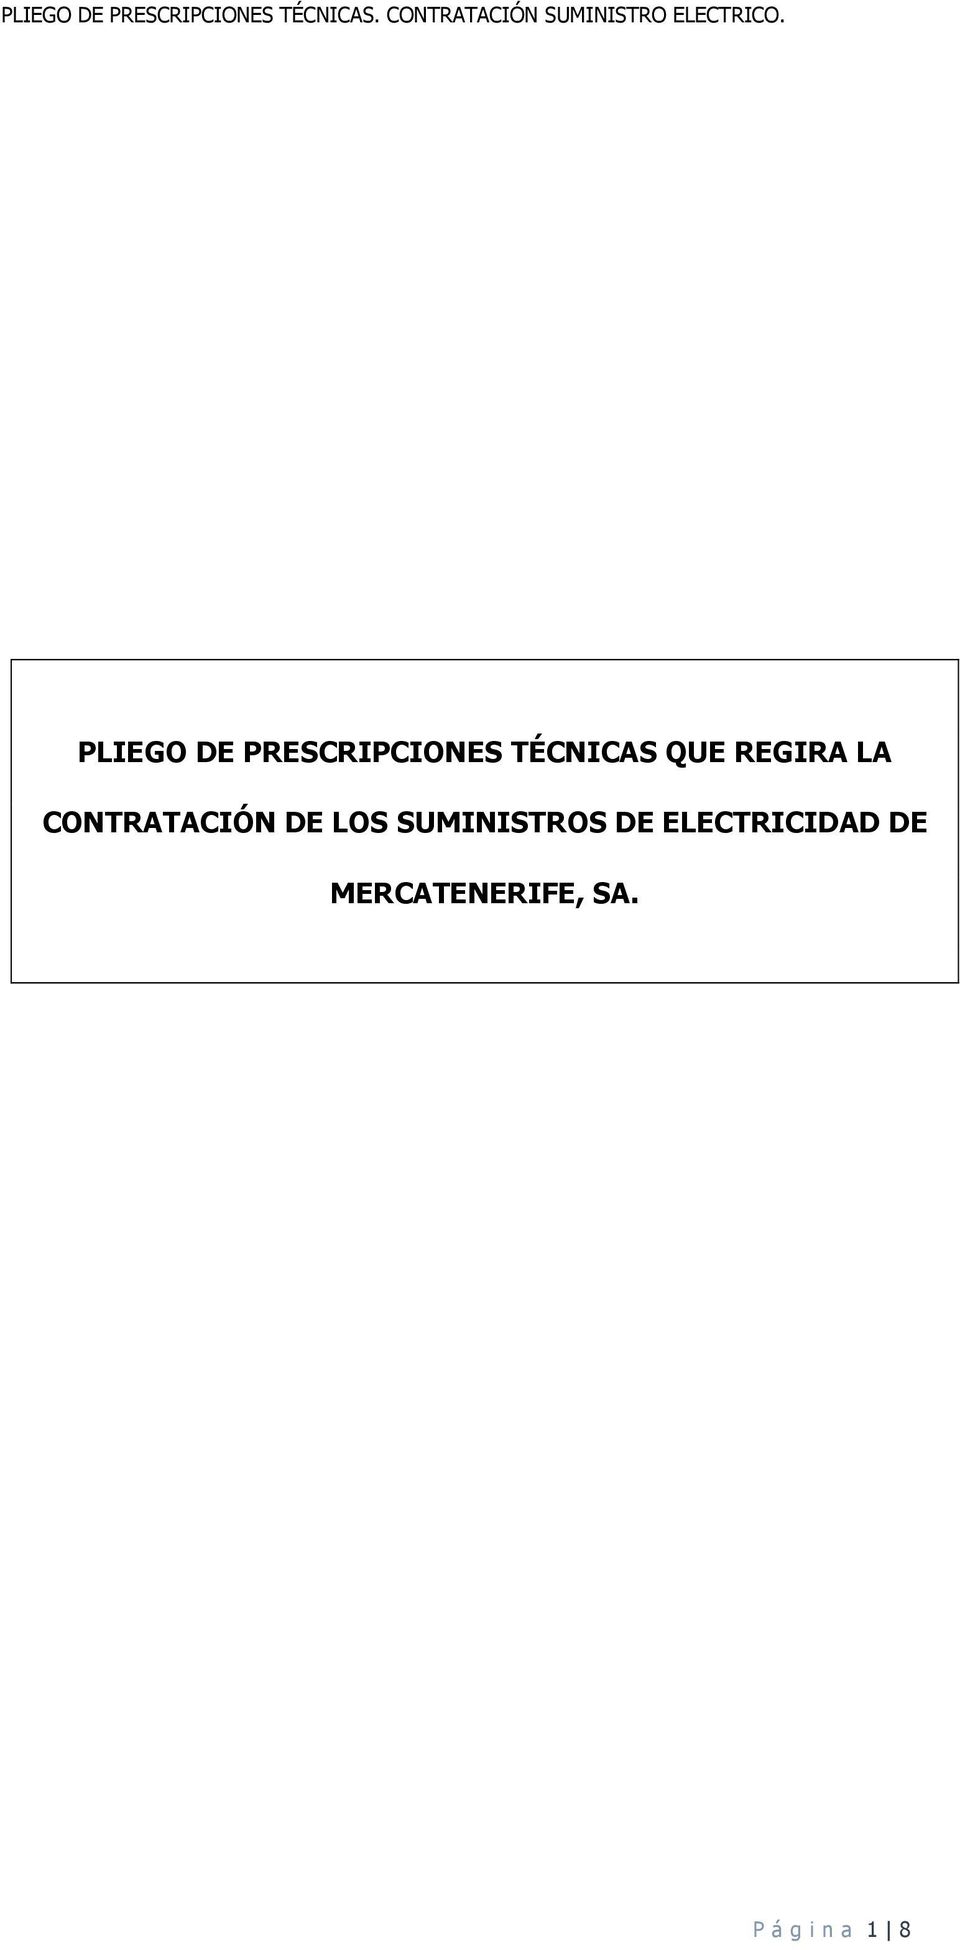 SUMINISTROS DE ELECTRICIDAD DE